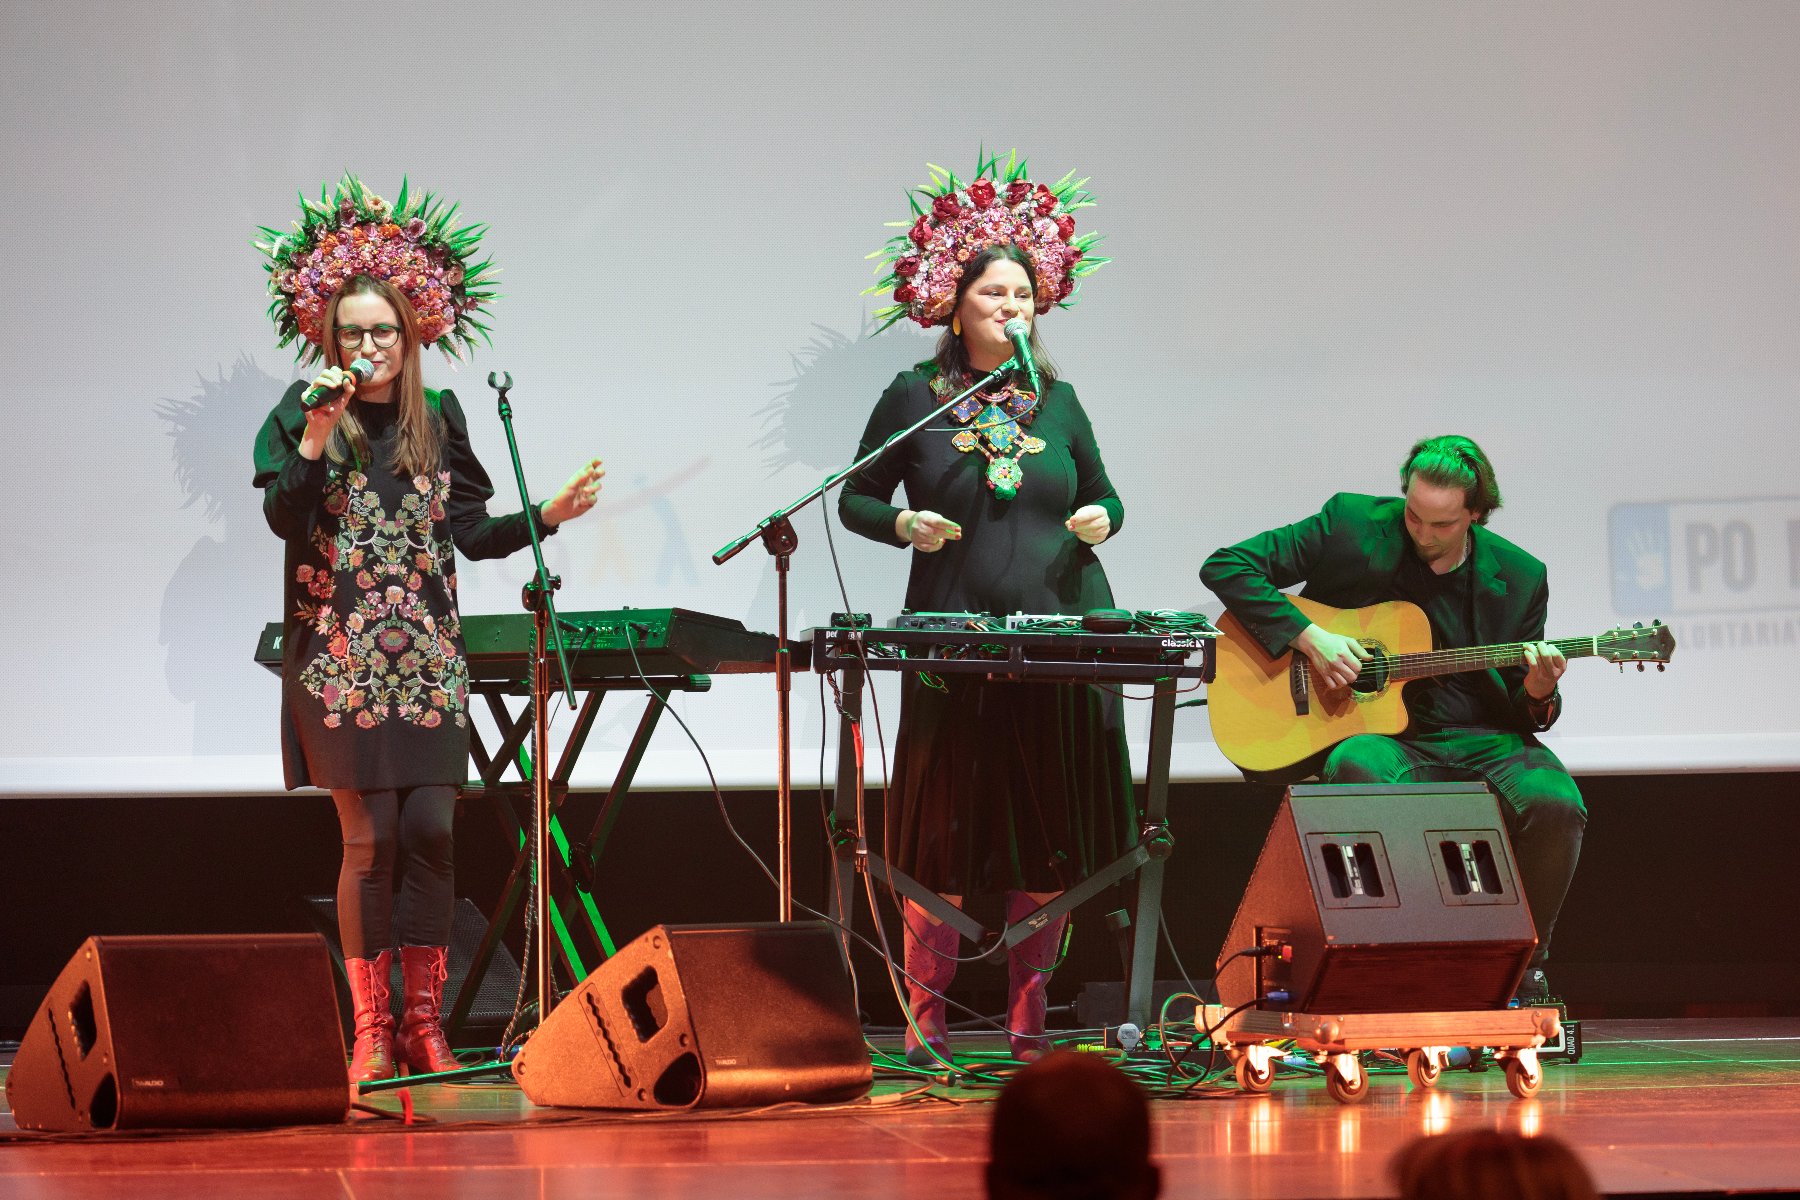 Na zdjęciu znajdują się dwie kobiety na scenie śpiewające do mikrofonów. Obie mają na głowach słowiańskie wieńce. Obok nich siedzi mężczyzna grający na gitarze.